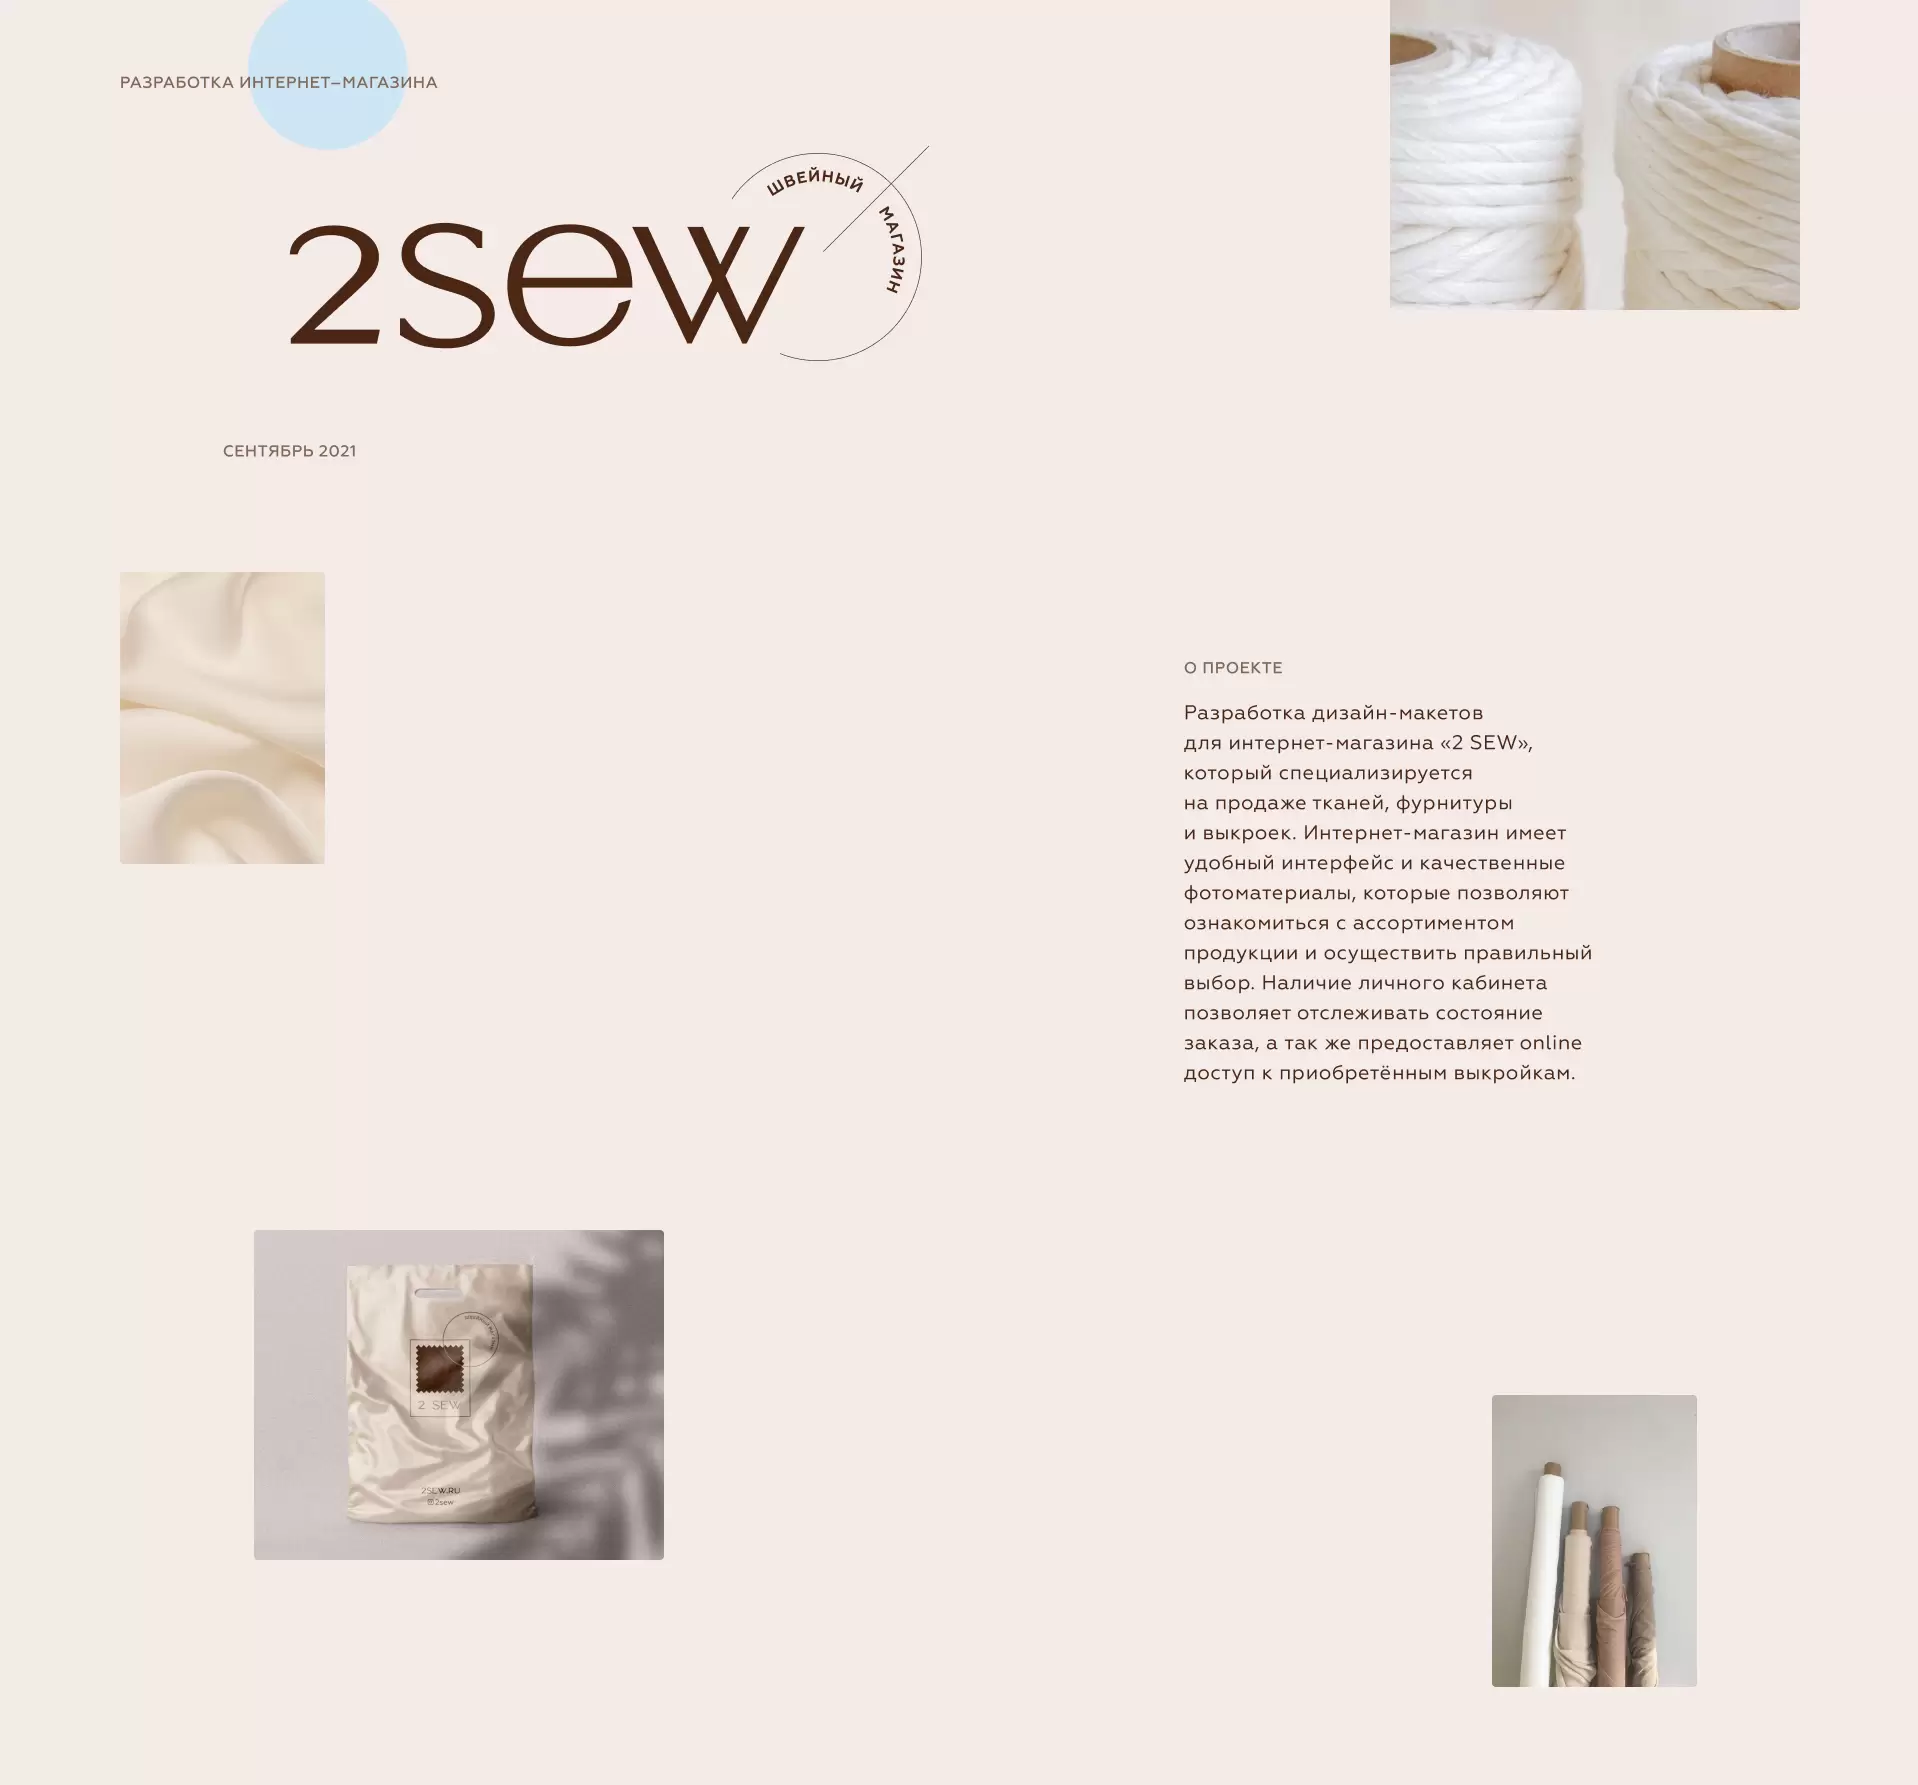 Швейный магазин «2SEW»